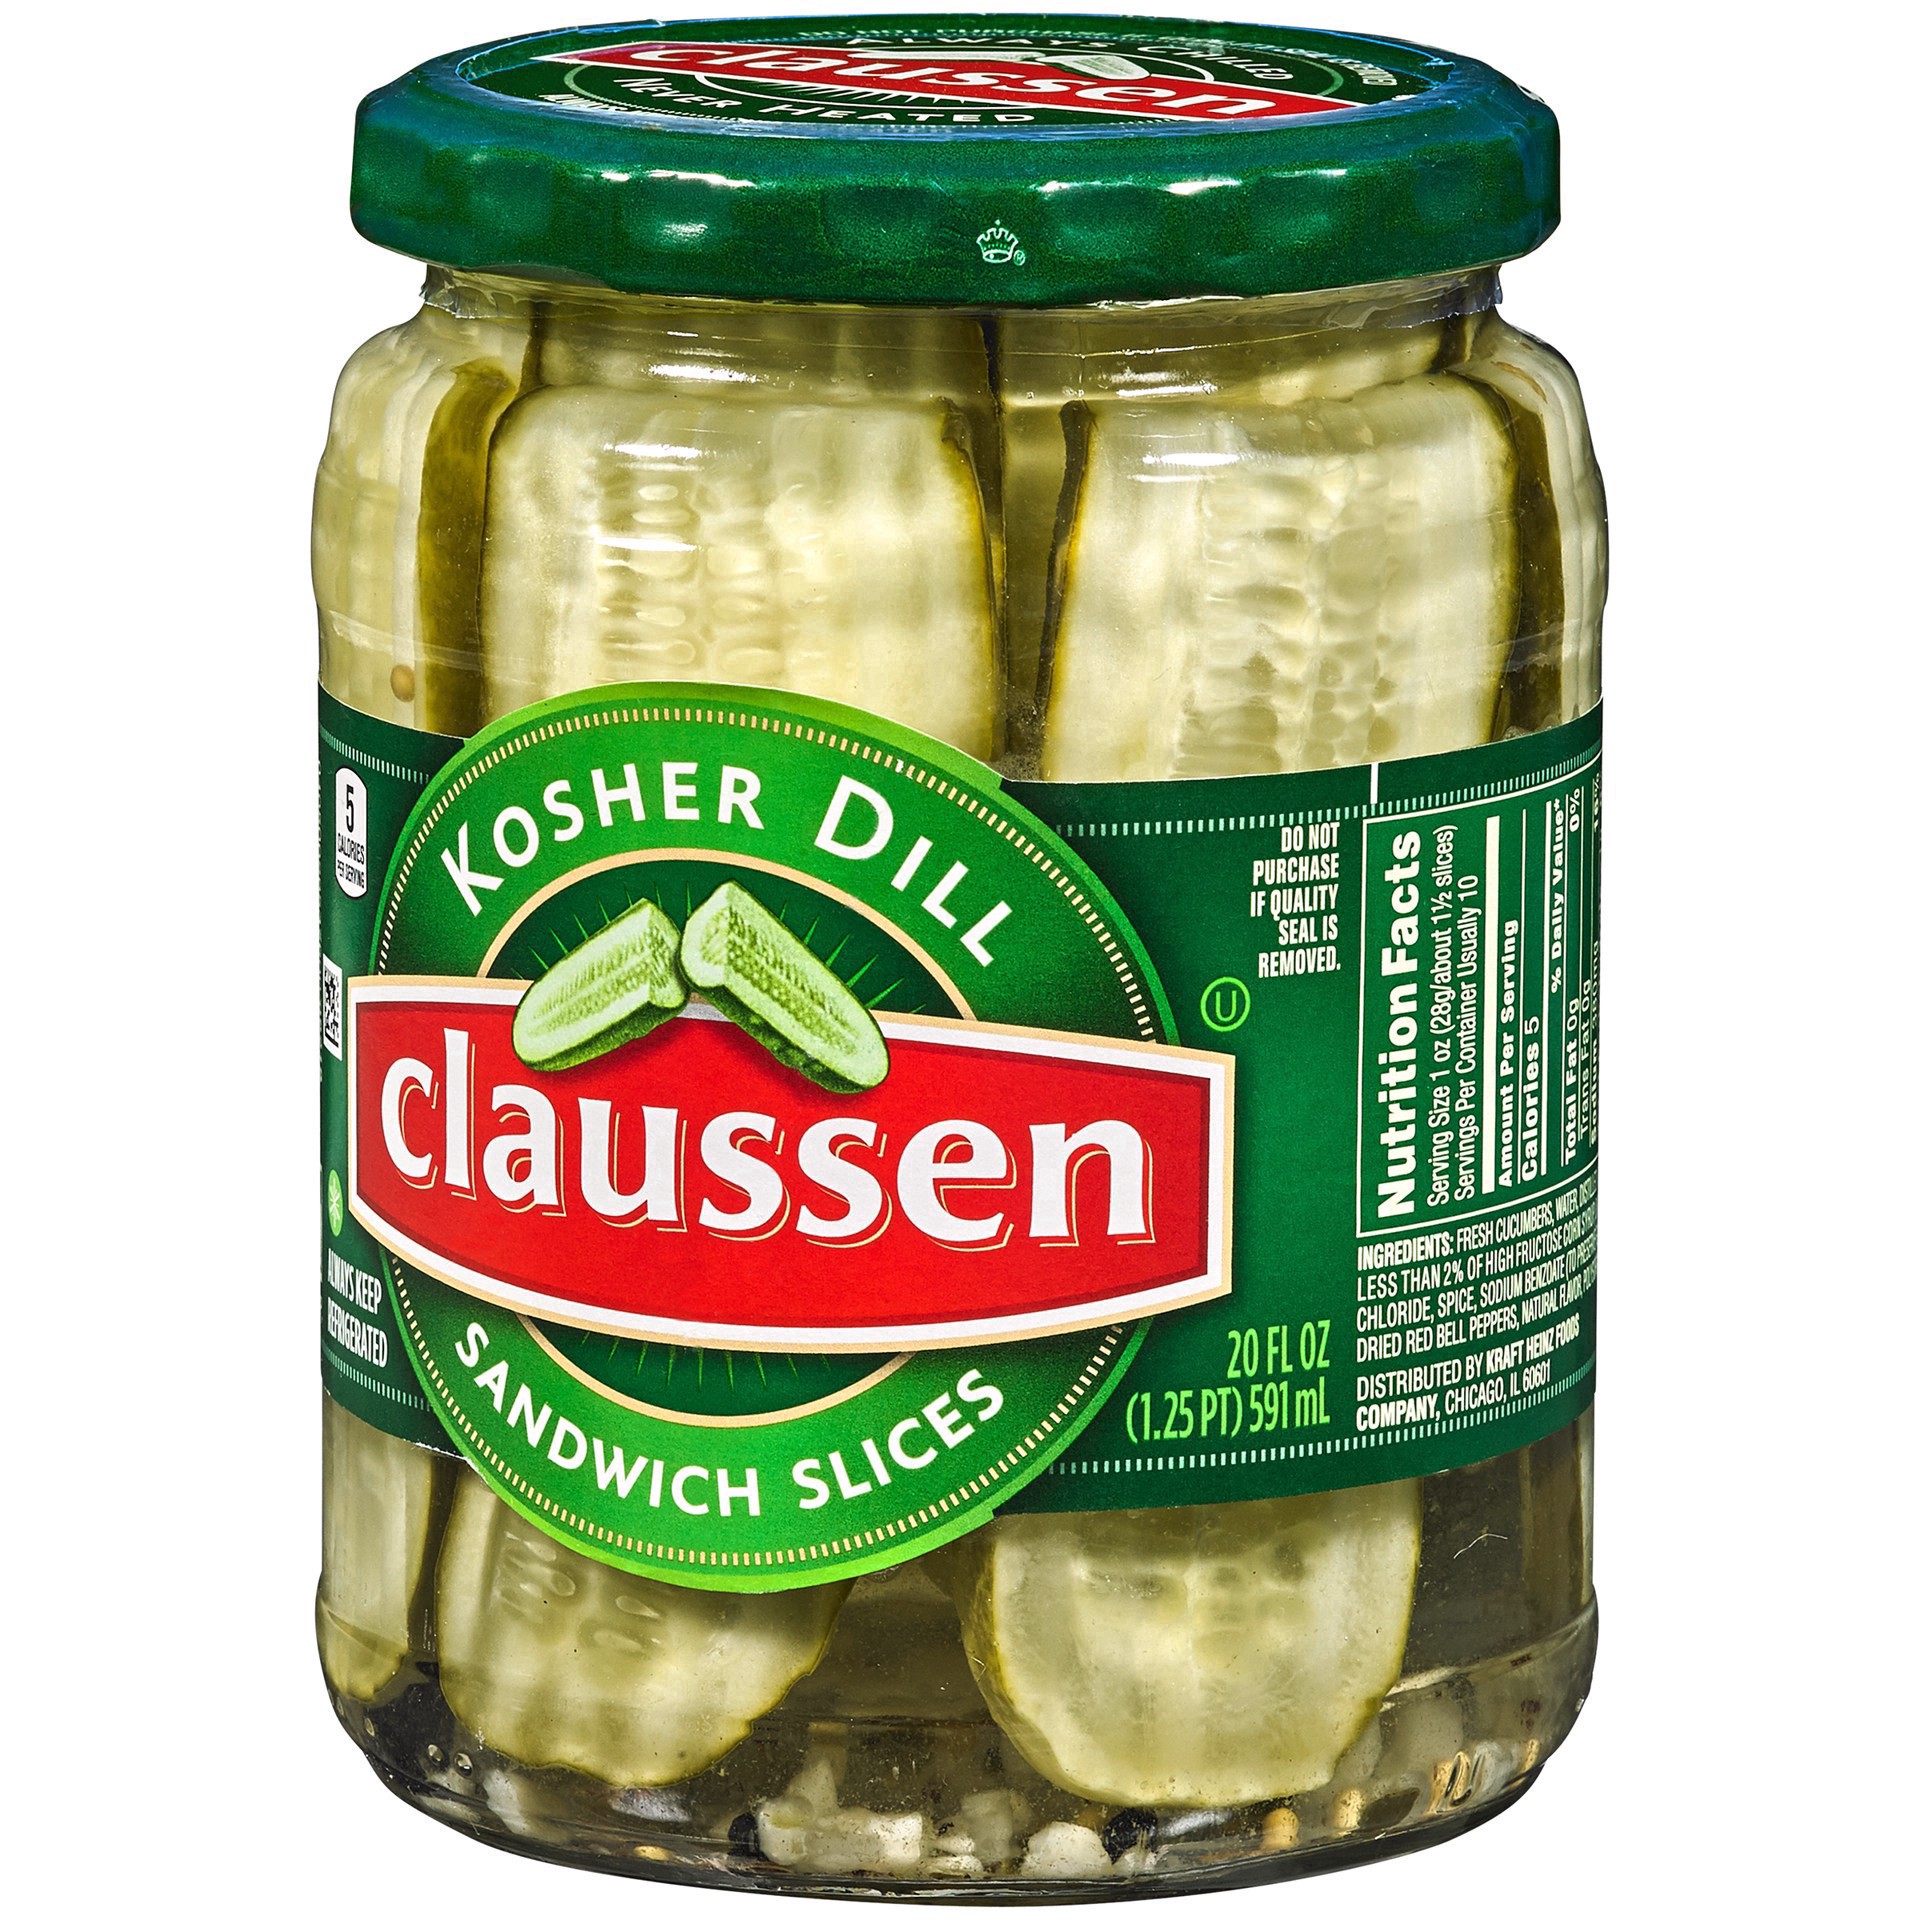 slide 128 of 144, Claussen Kosher Dill Pickle Sandwich Slices, 20 fl. oz. Jar, 20 fl oz